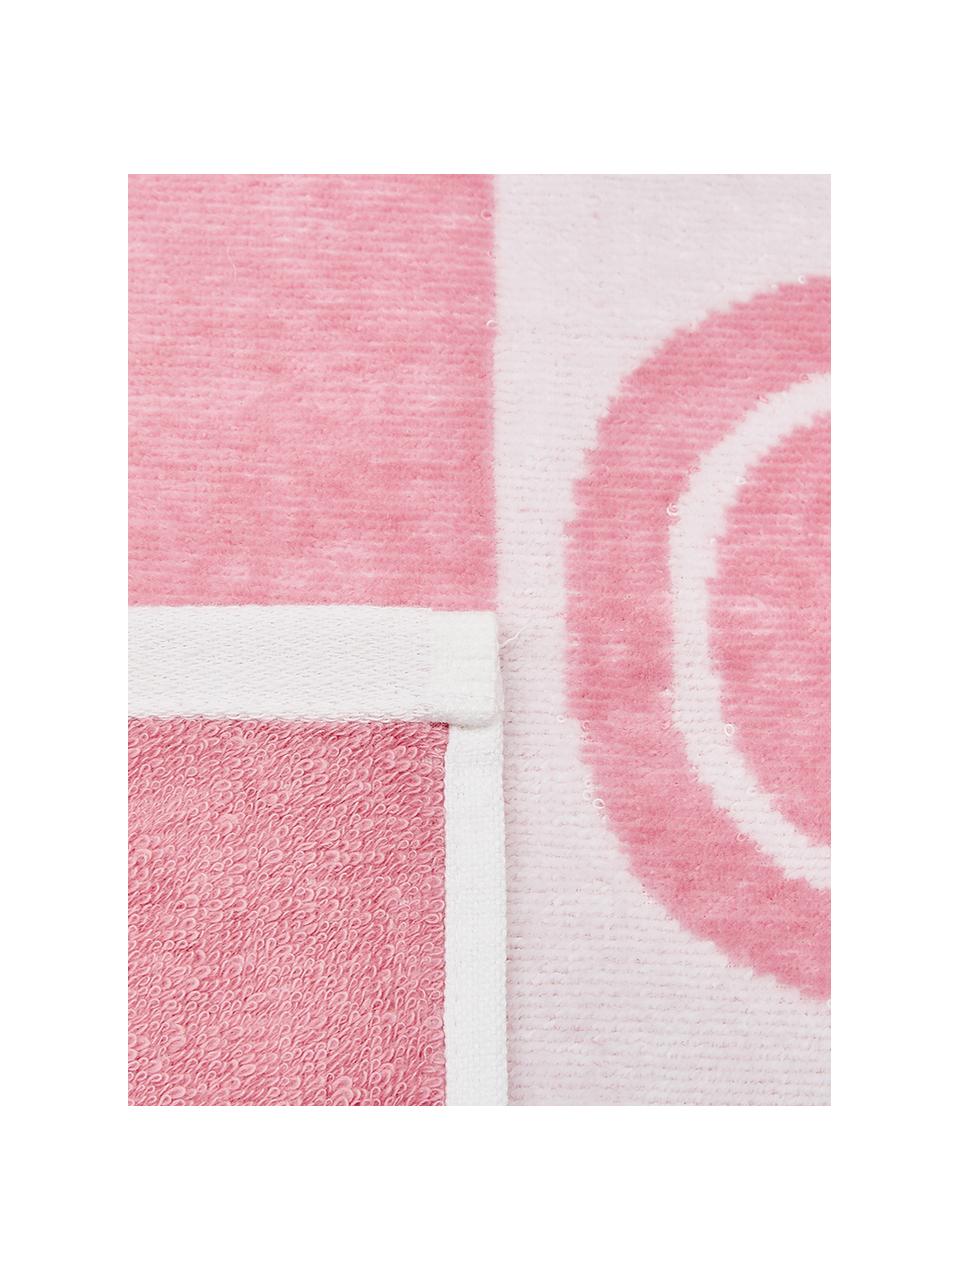 Gestreiftes Strandtuch Anon mit Anker-Motiv, 100% Baumwolle
leichte Qualität 380 g/m², Pink, Weiss, 80 x 160 cm